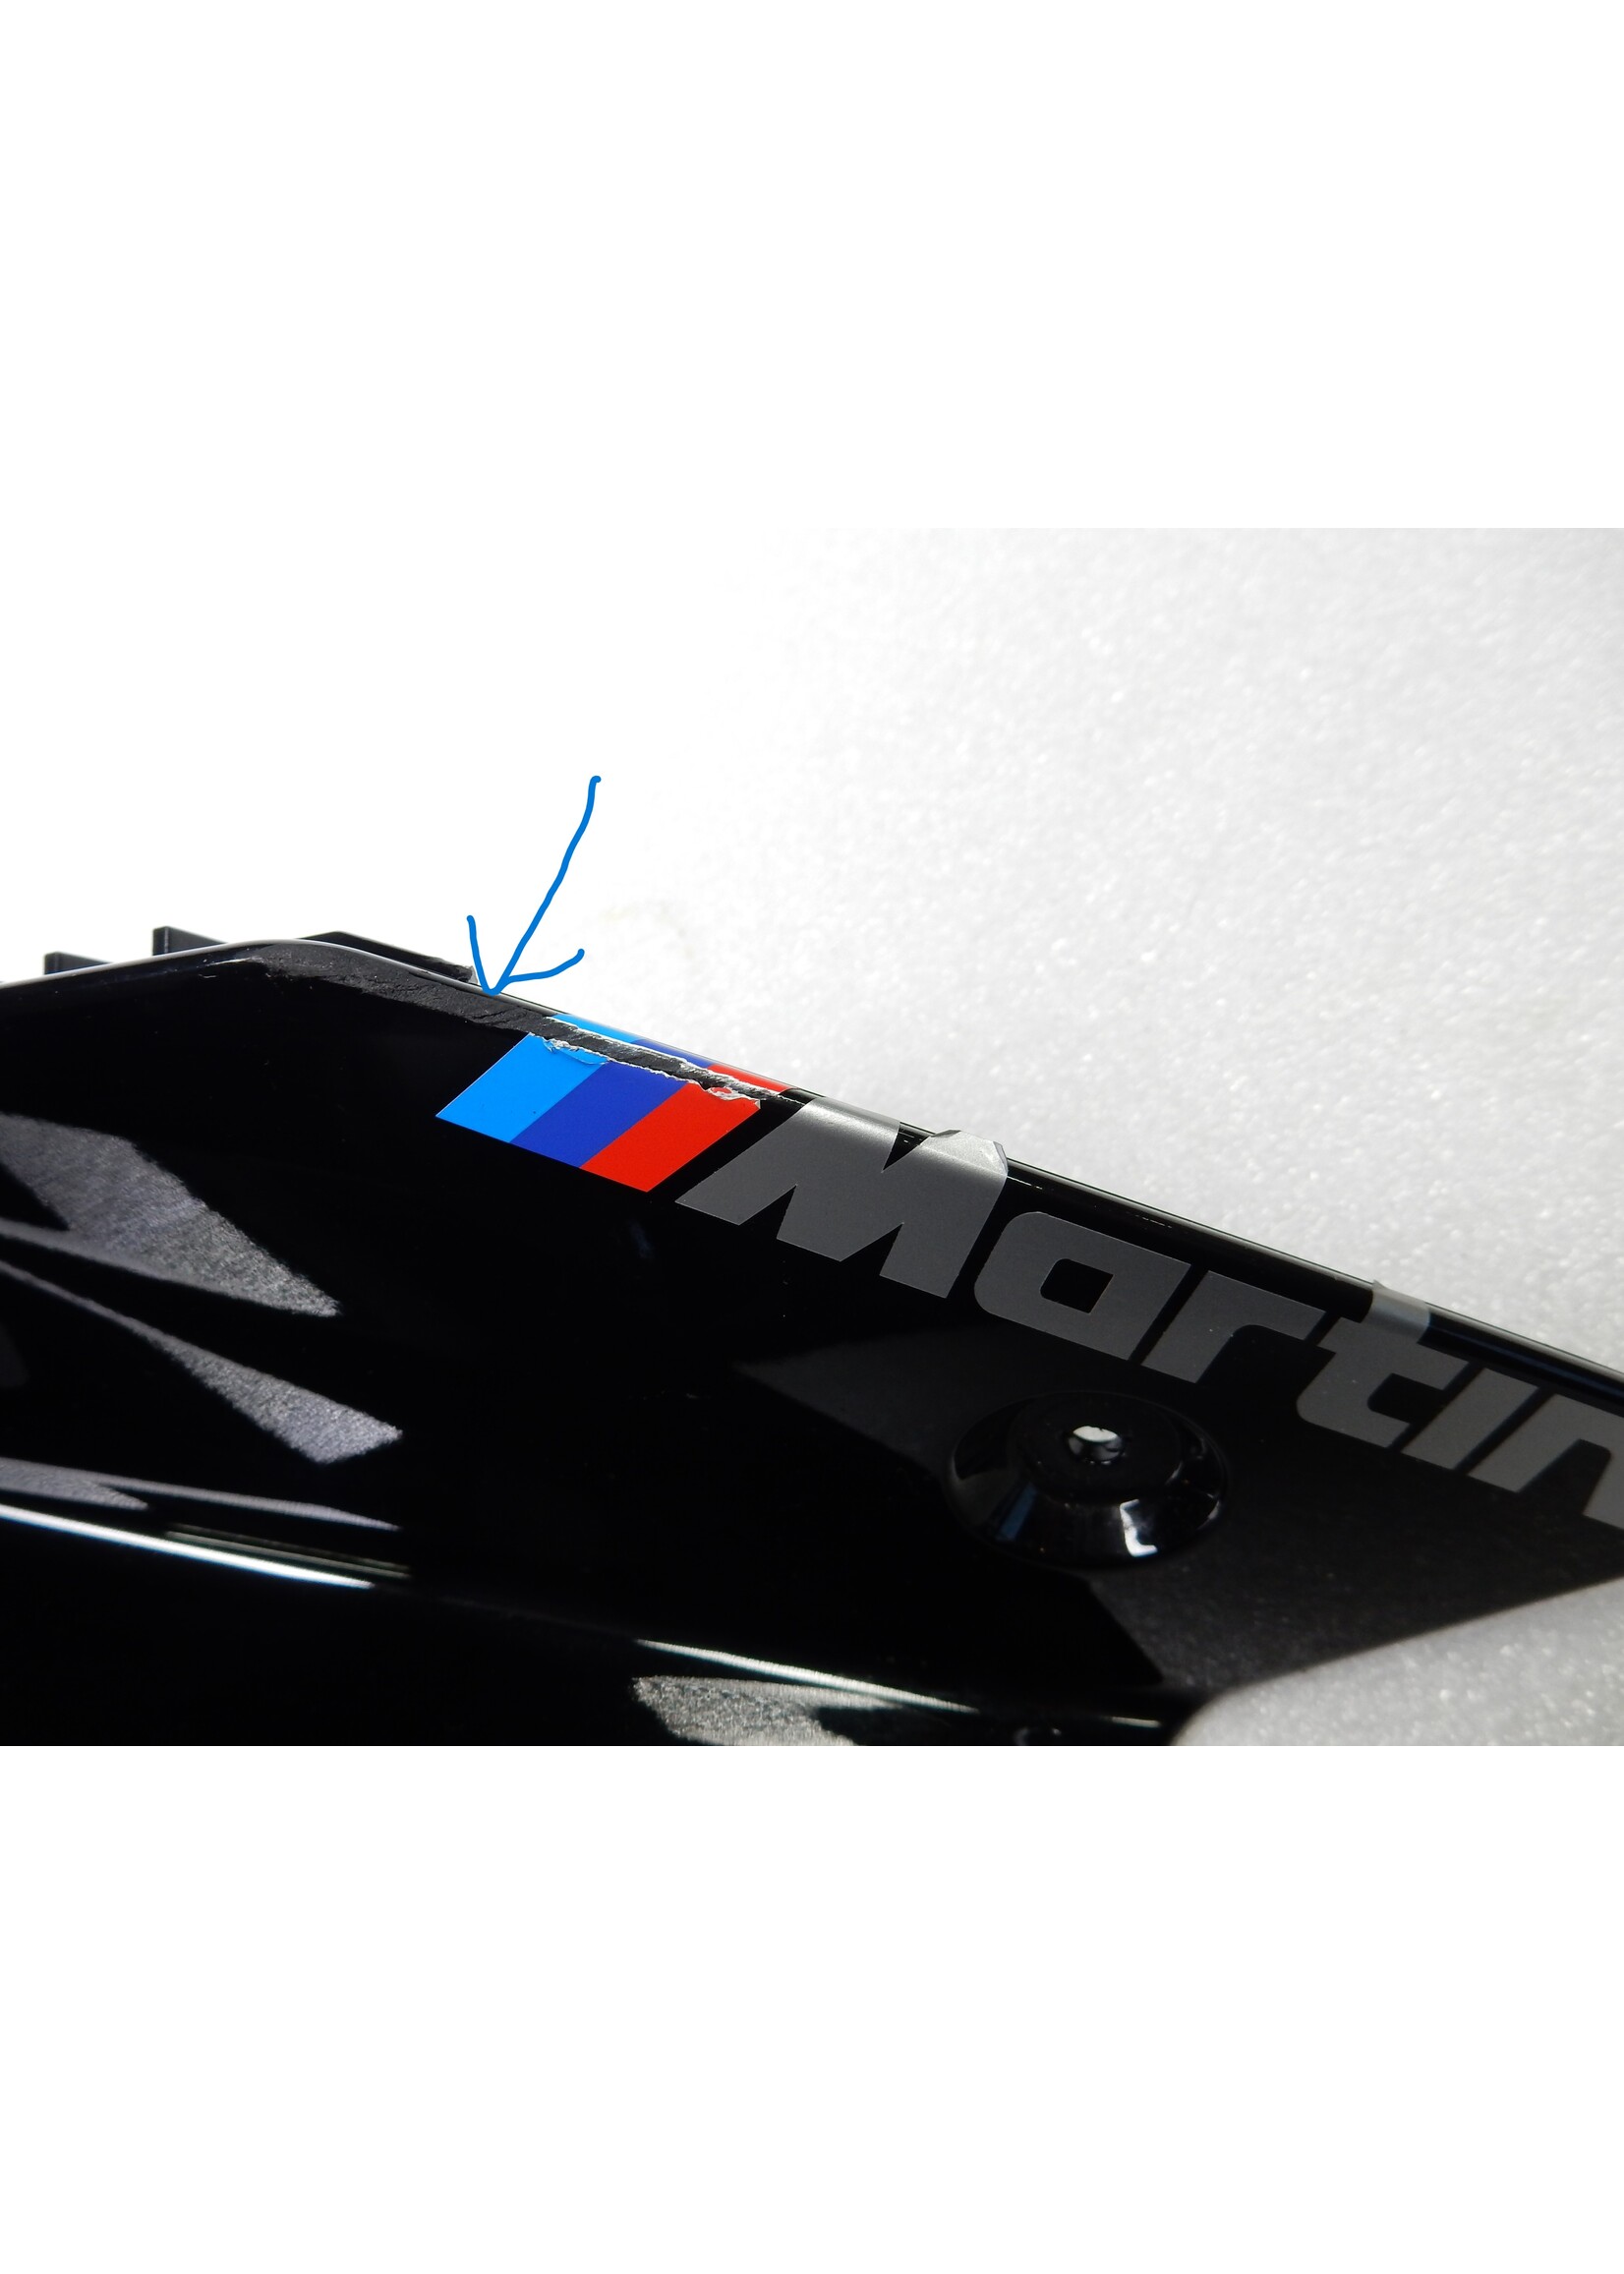 BMW BMW F 900 XR Tankafdekking rechts onder / Zijdeel bekleding rechts Tape op transparante lak BLACK STORM / 46638403902 / 46638403894 / 46638358168